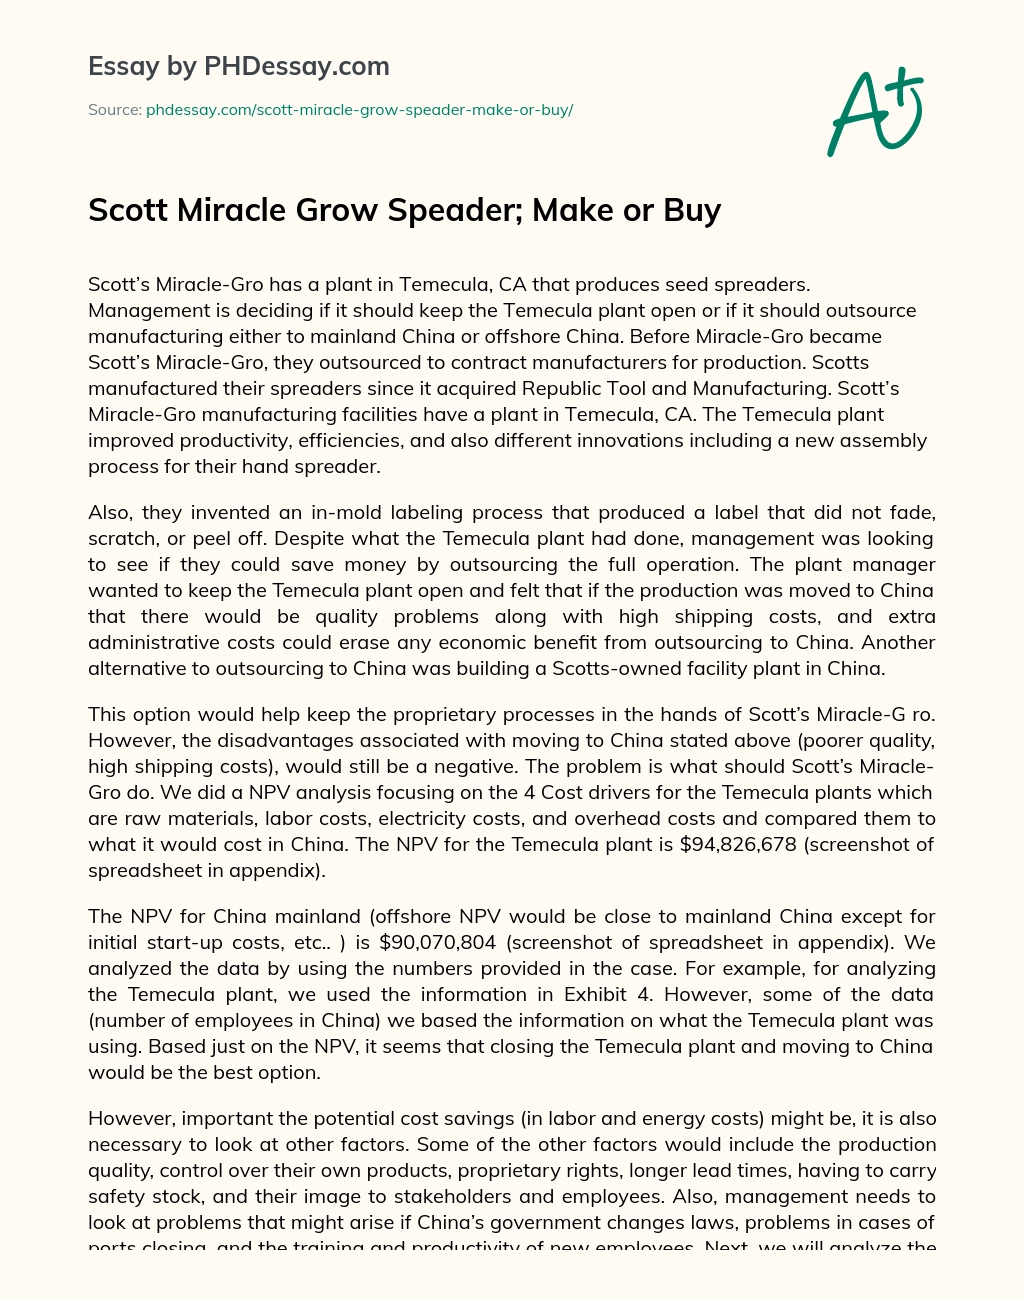 Scott Miracle Grow Speader; Make or Buy essay